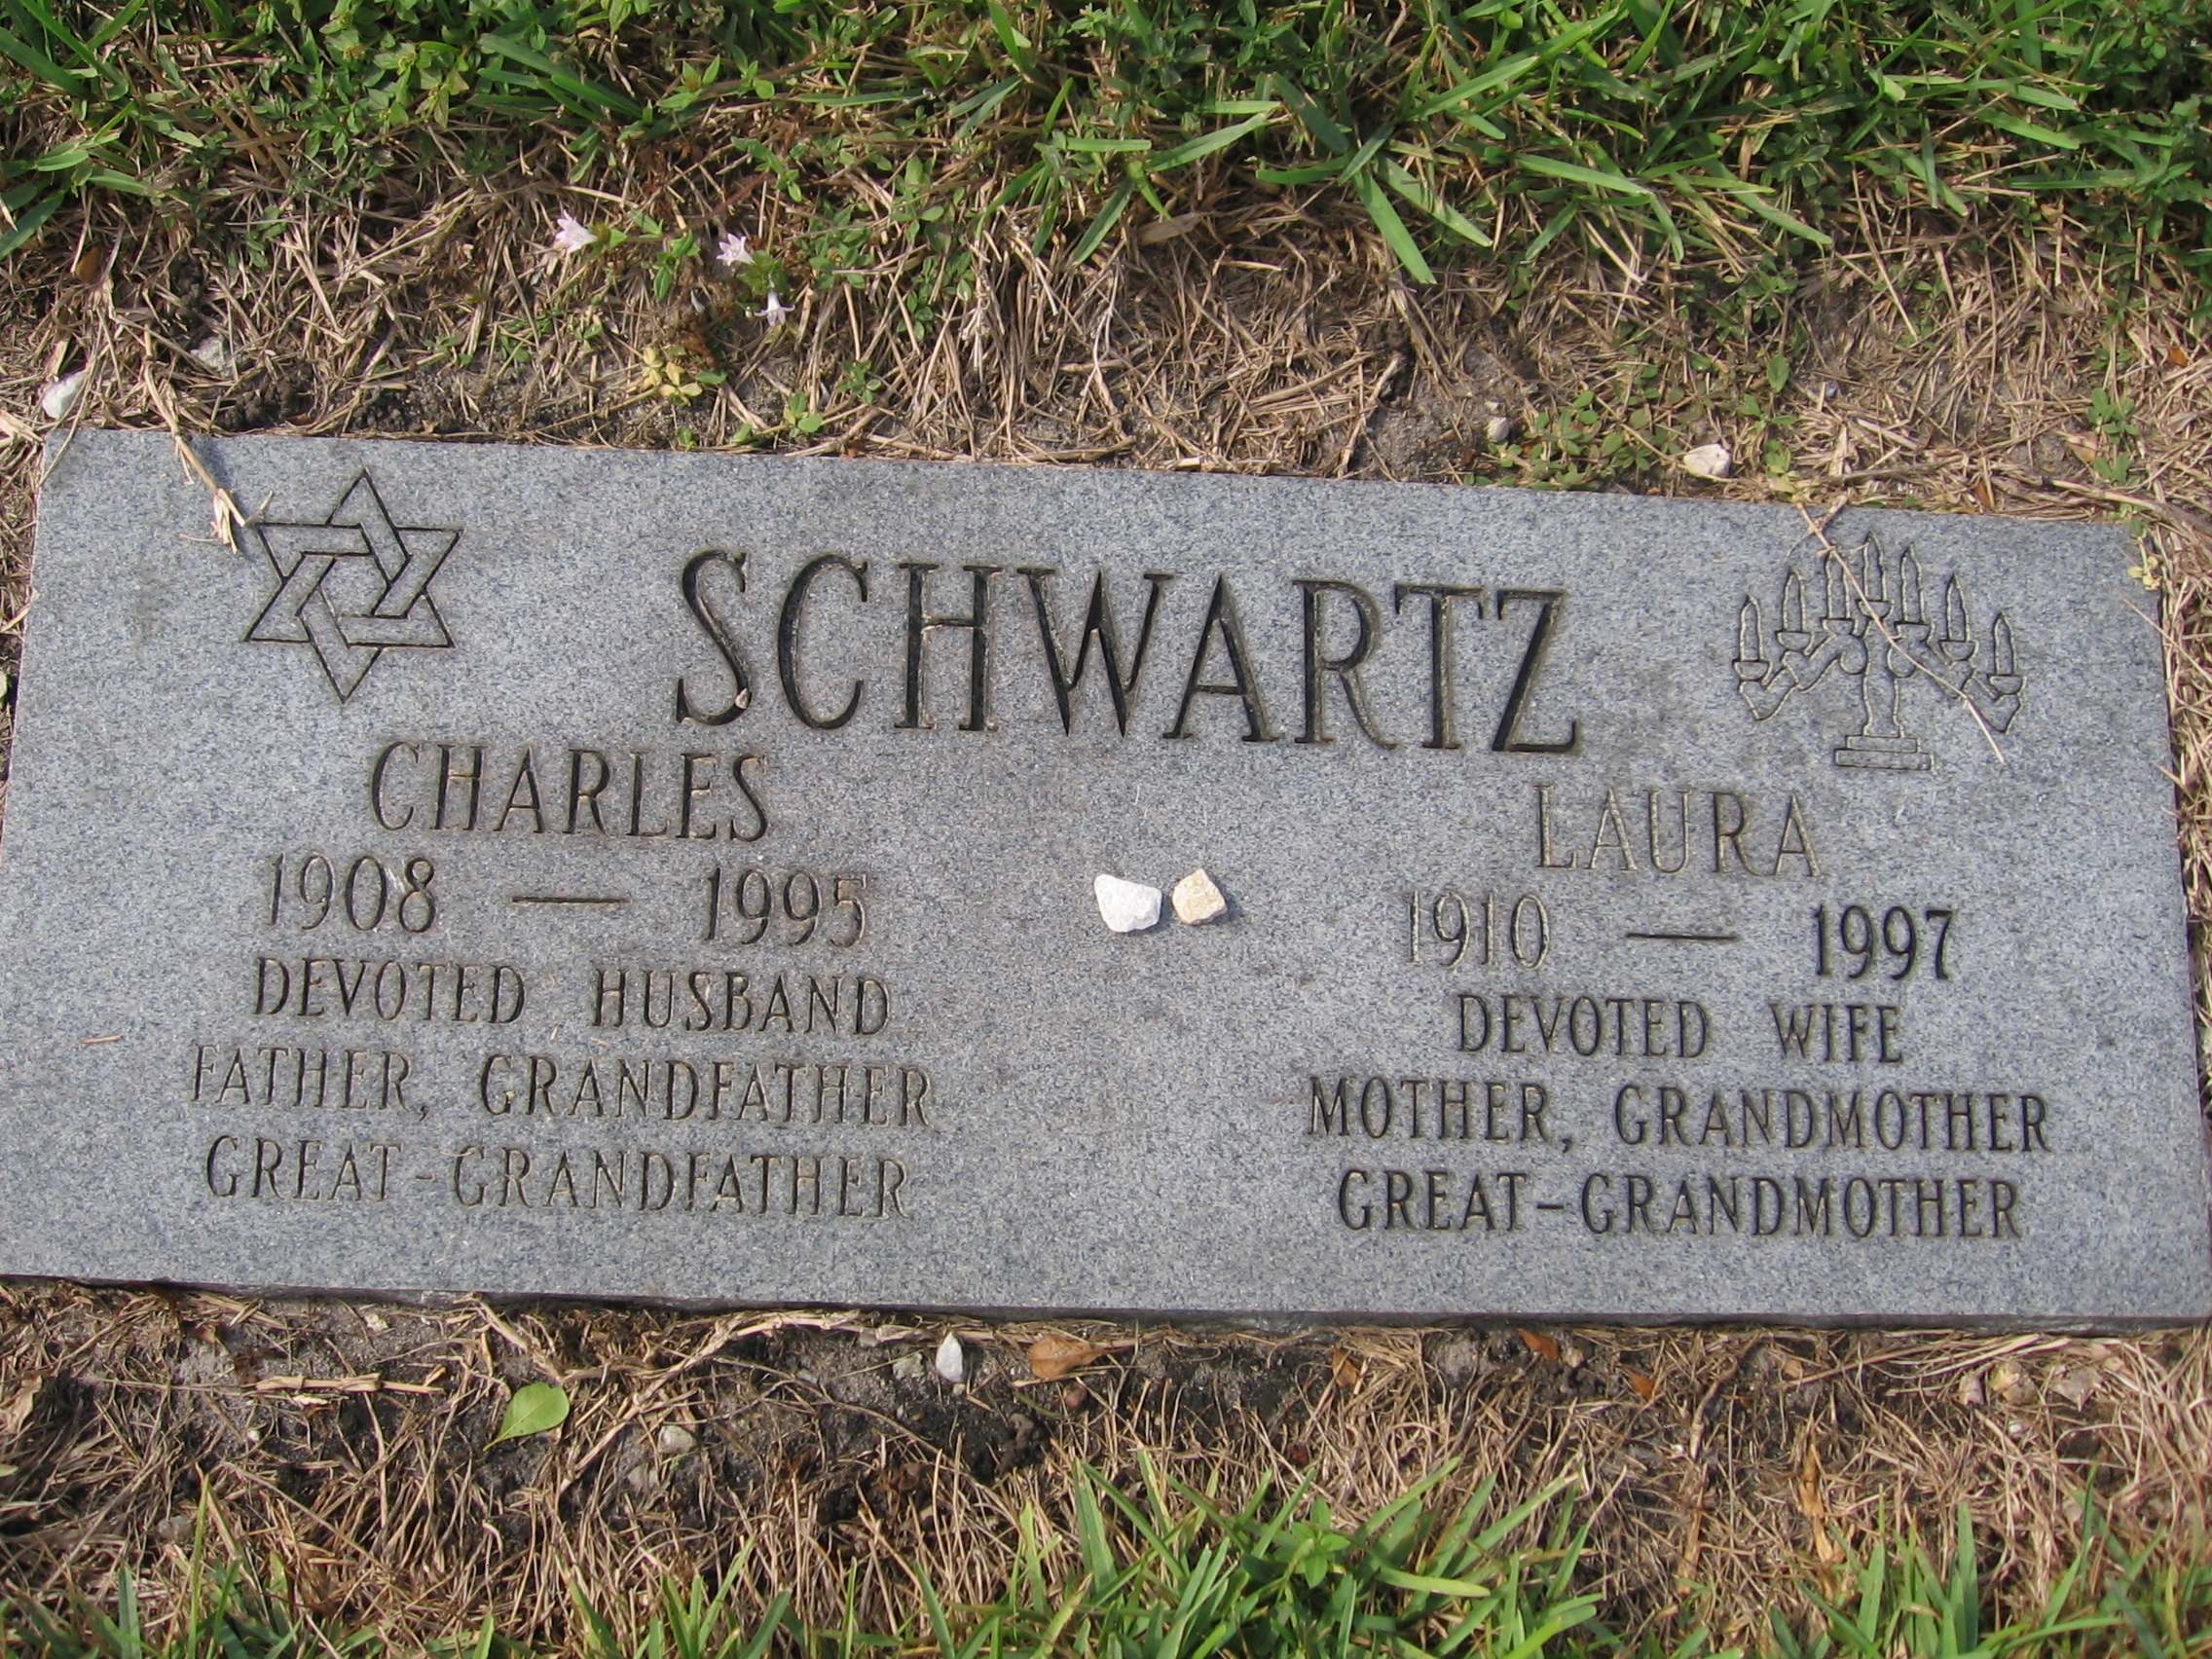 Charles Schwartz